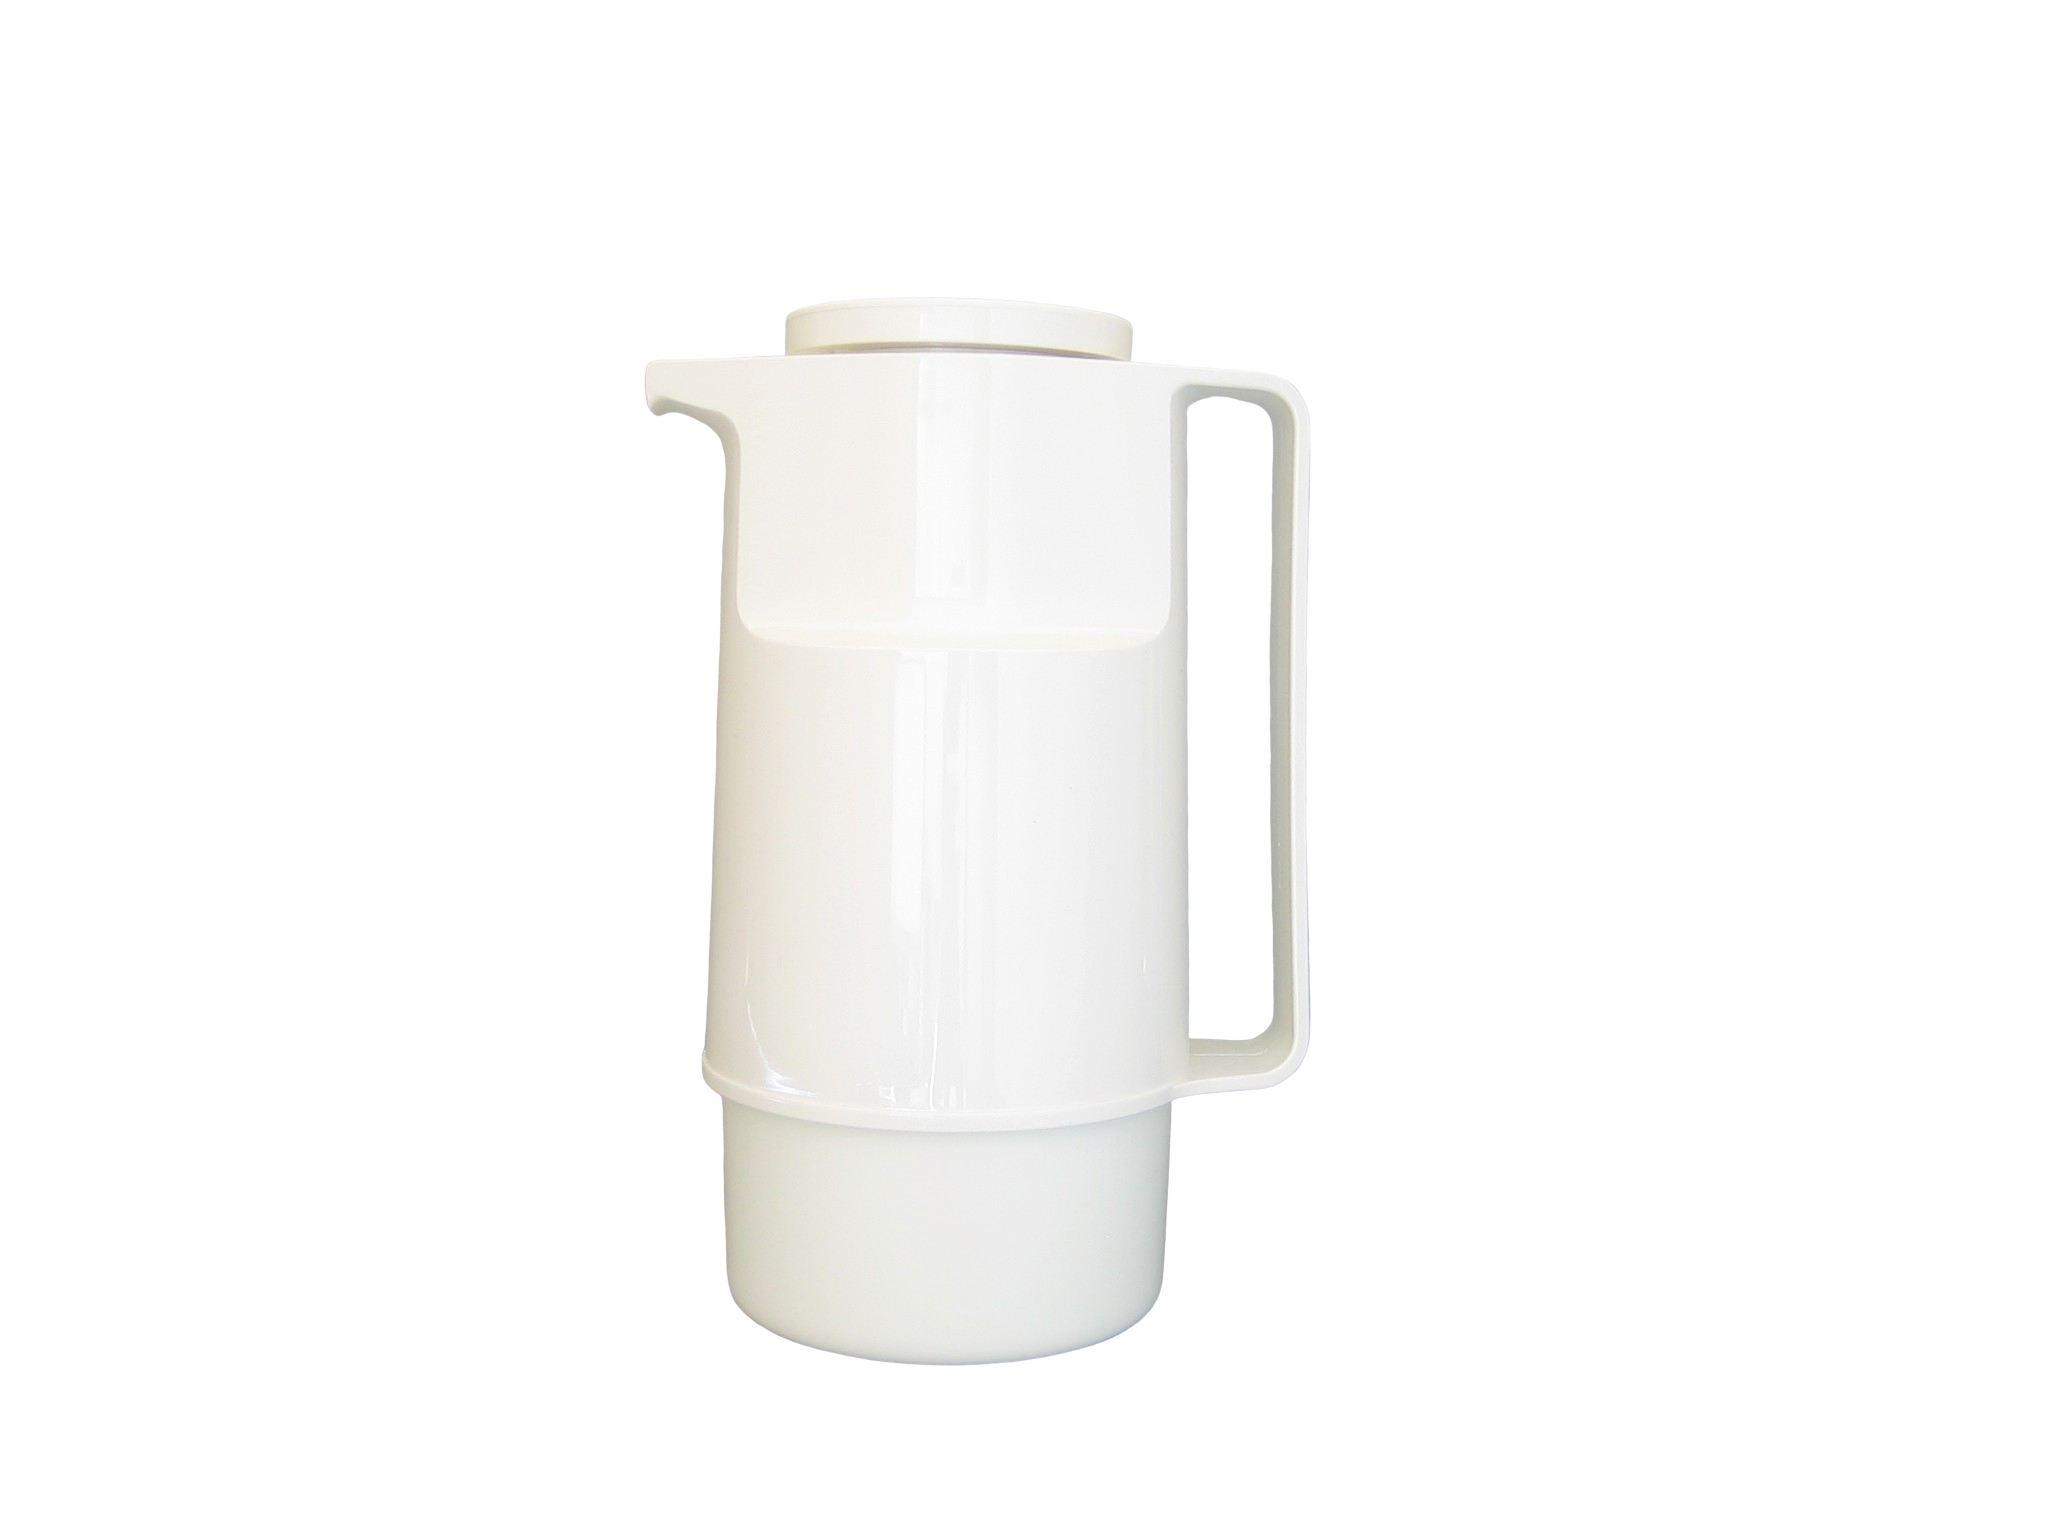 210-001 - Vacuum carafe ABS white 1.0 L - Isobel